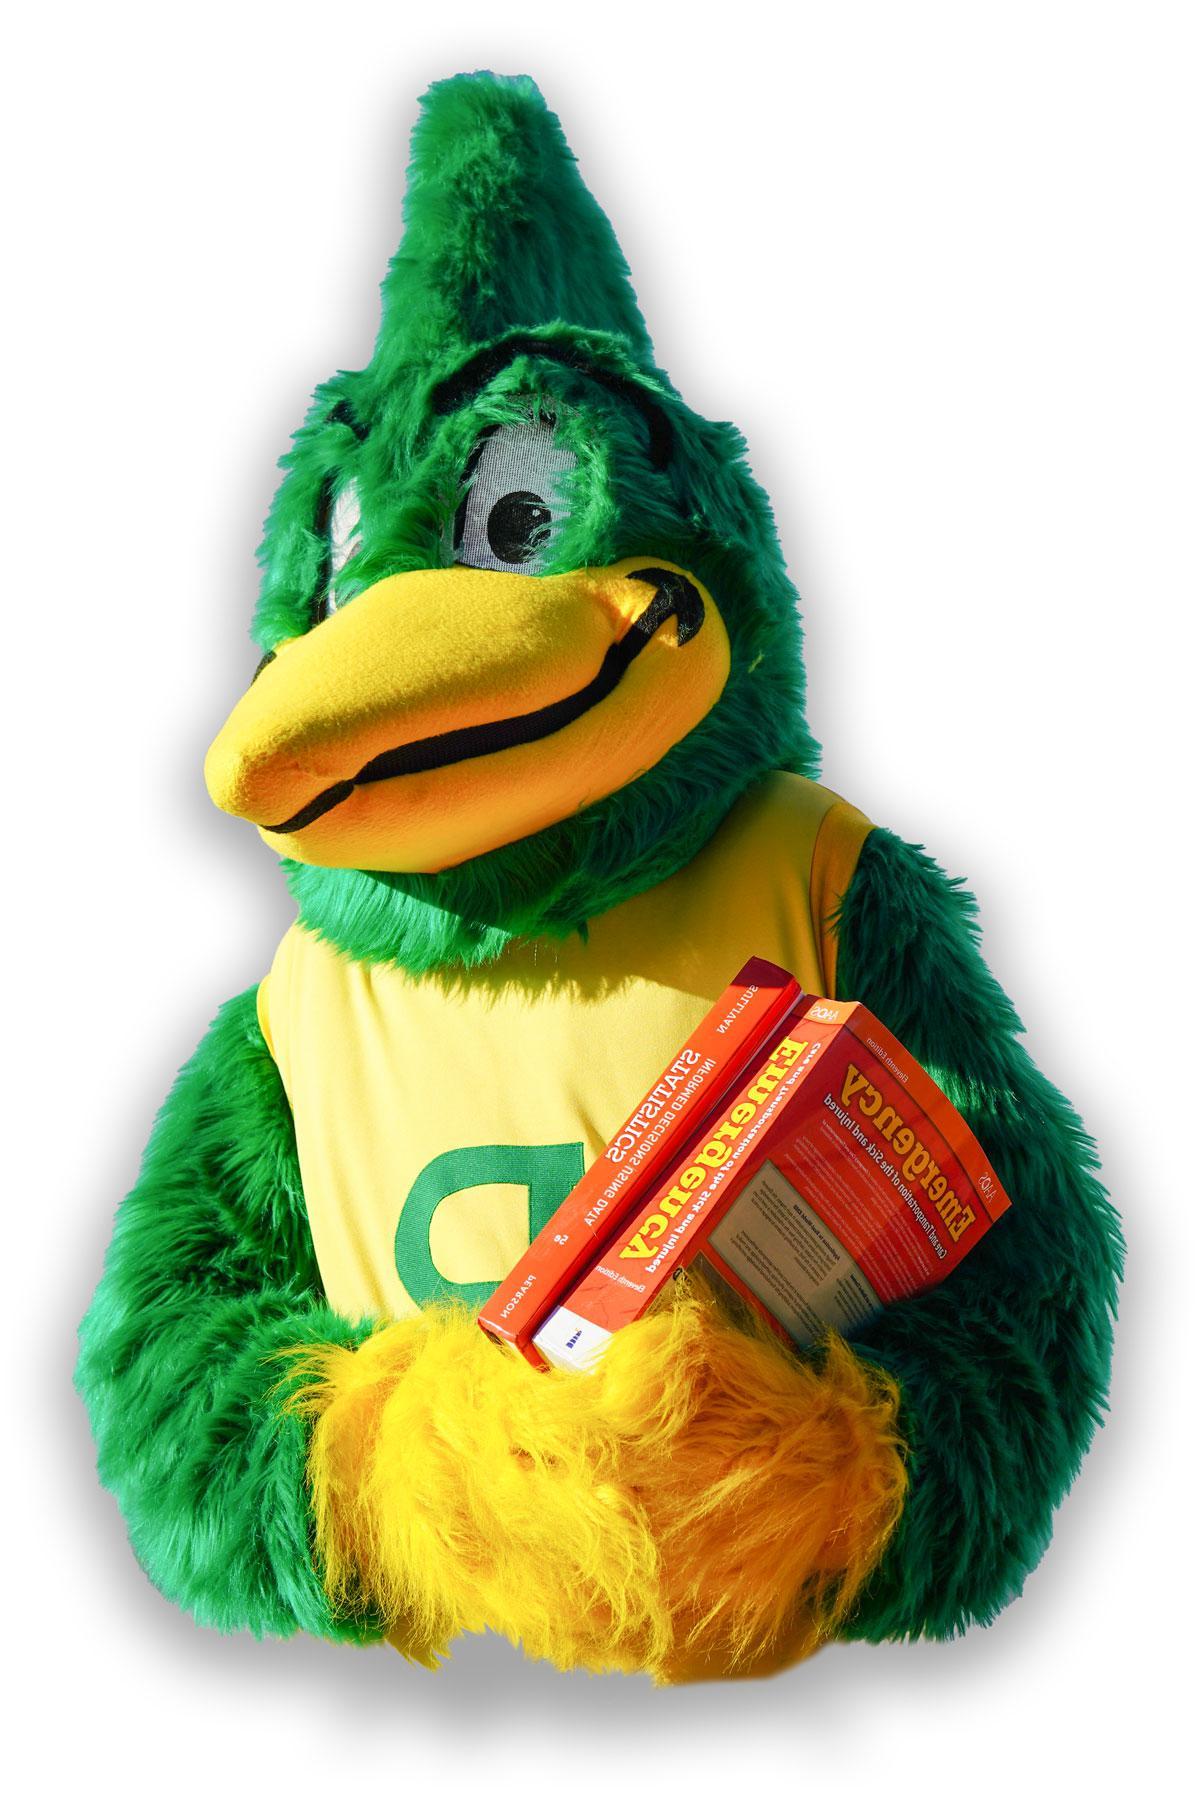 roadrunner mascot with books